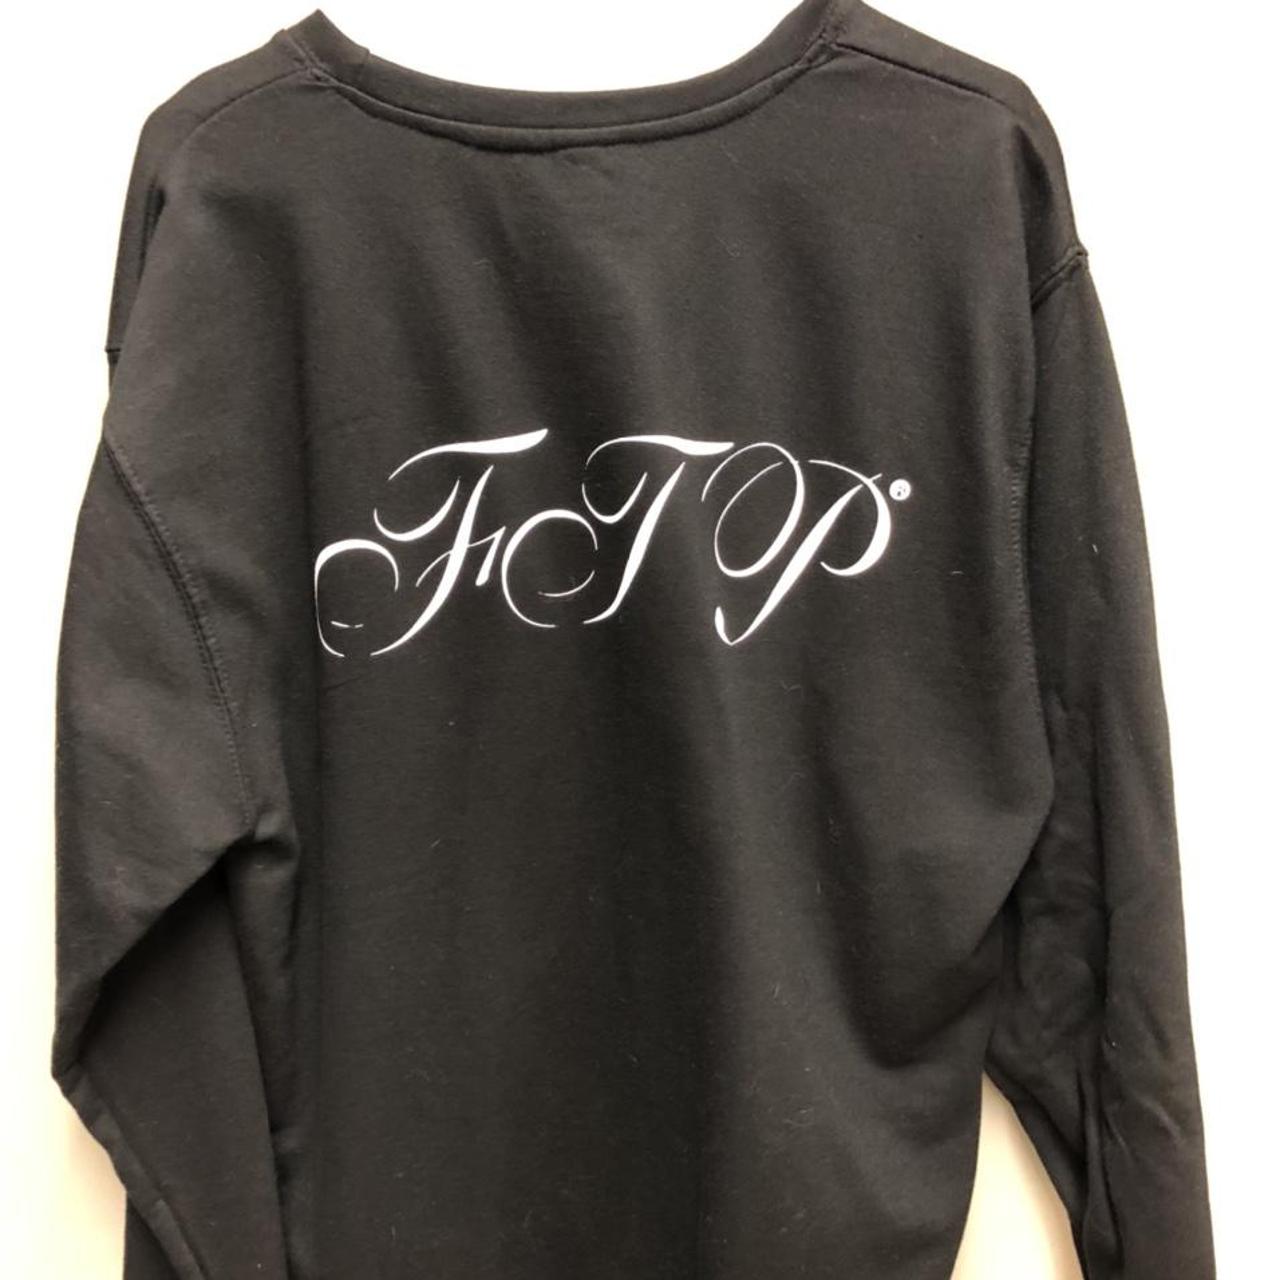 Ftp script pullover in black, worn a few times.... - Depop